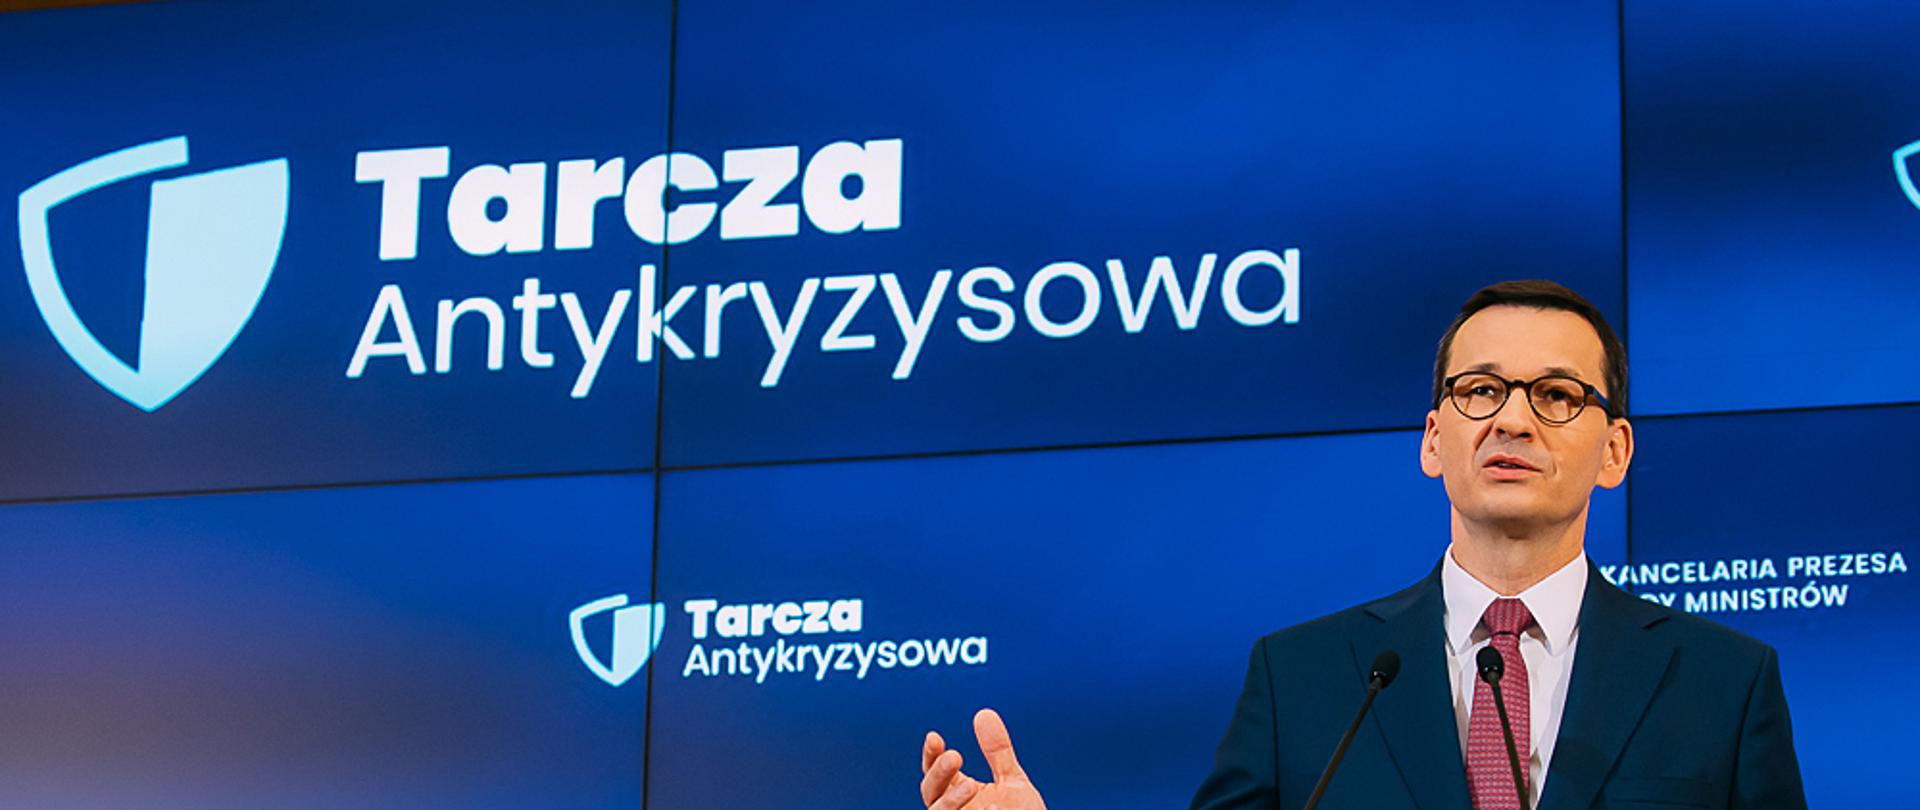 Zdjęcie z konferencji prasowej poświęconej Tarczy Antykryzysowej. Na zdjęciu Premier Mateusz Morawiecki.